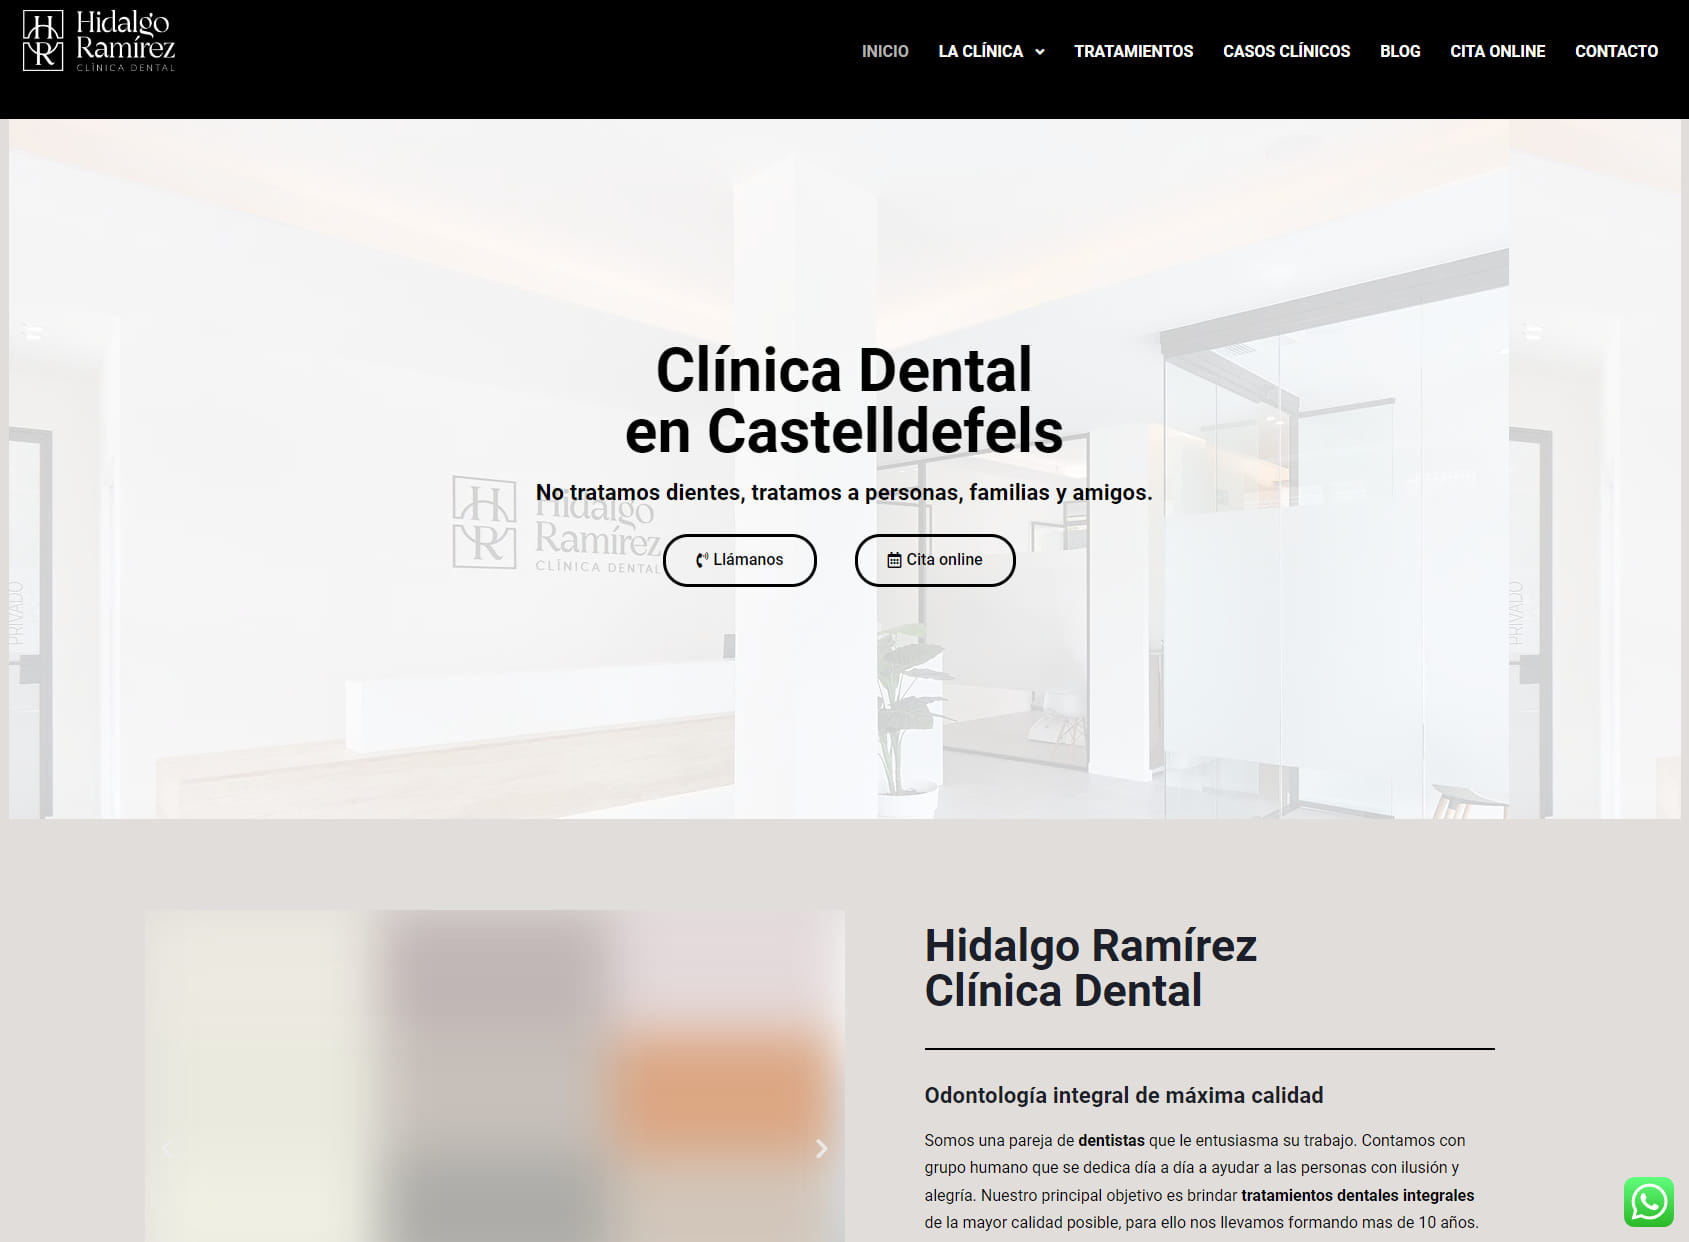 Clínica Dental Hidalgo Ramírez - Castelldefels